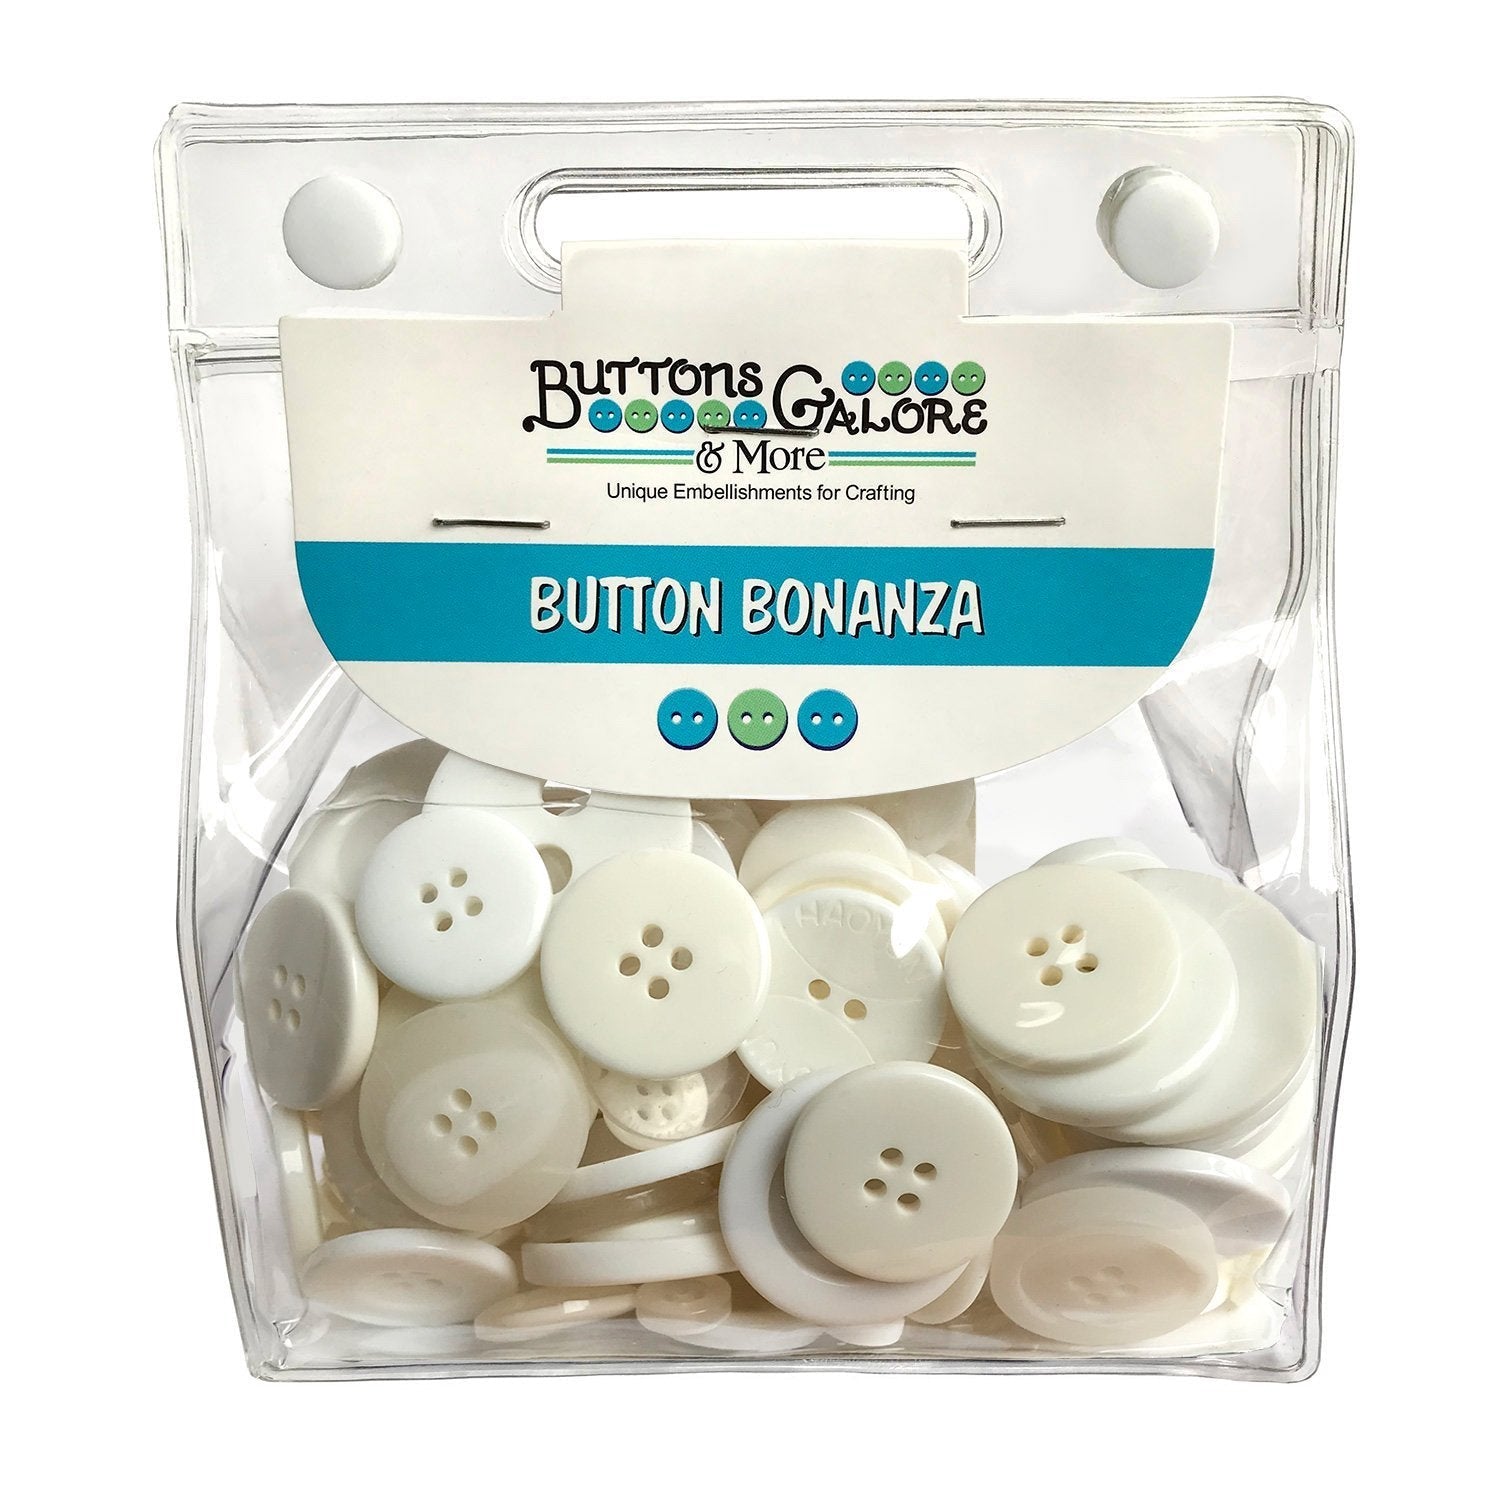 Buttons Galore & More Heart Novelty Button Assortment Buttons